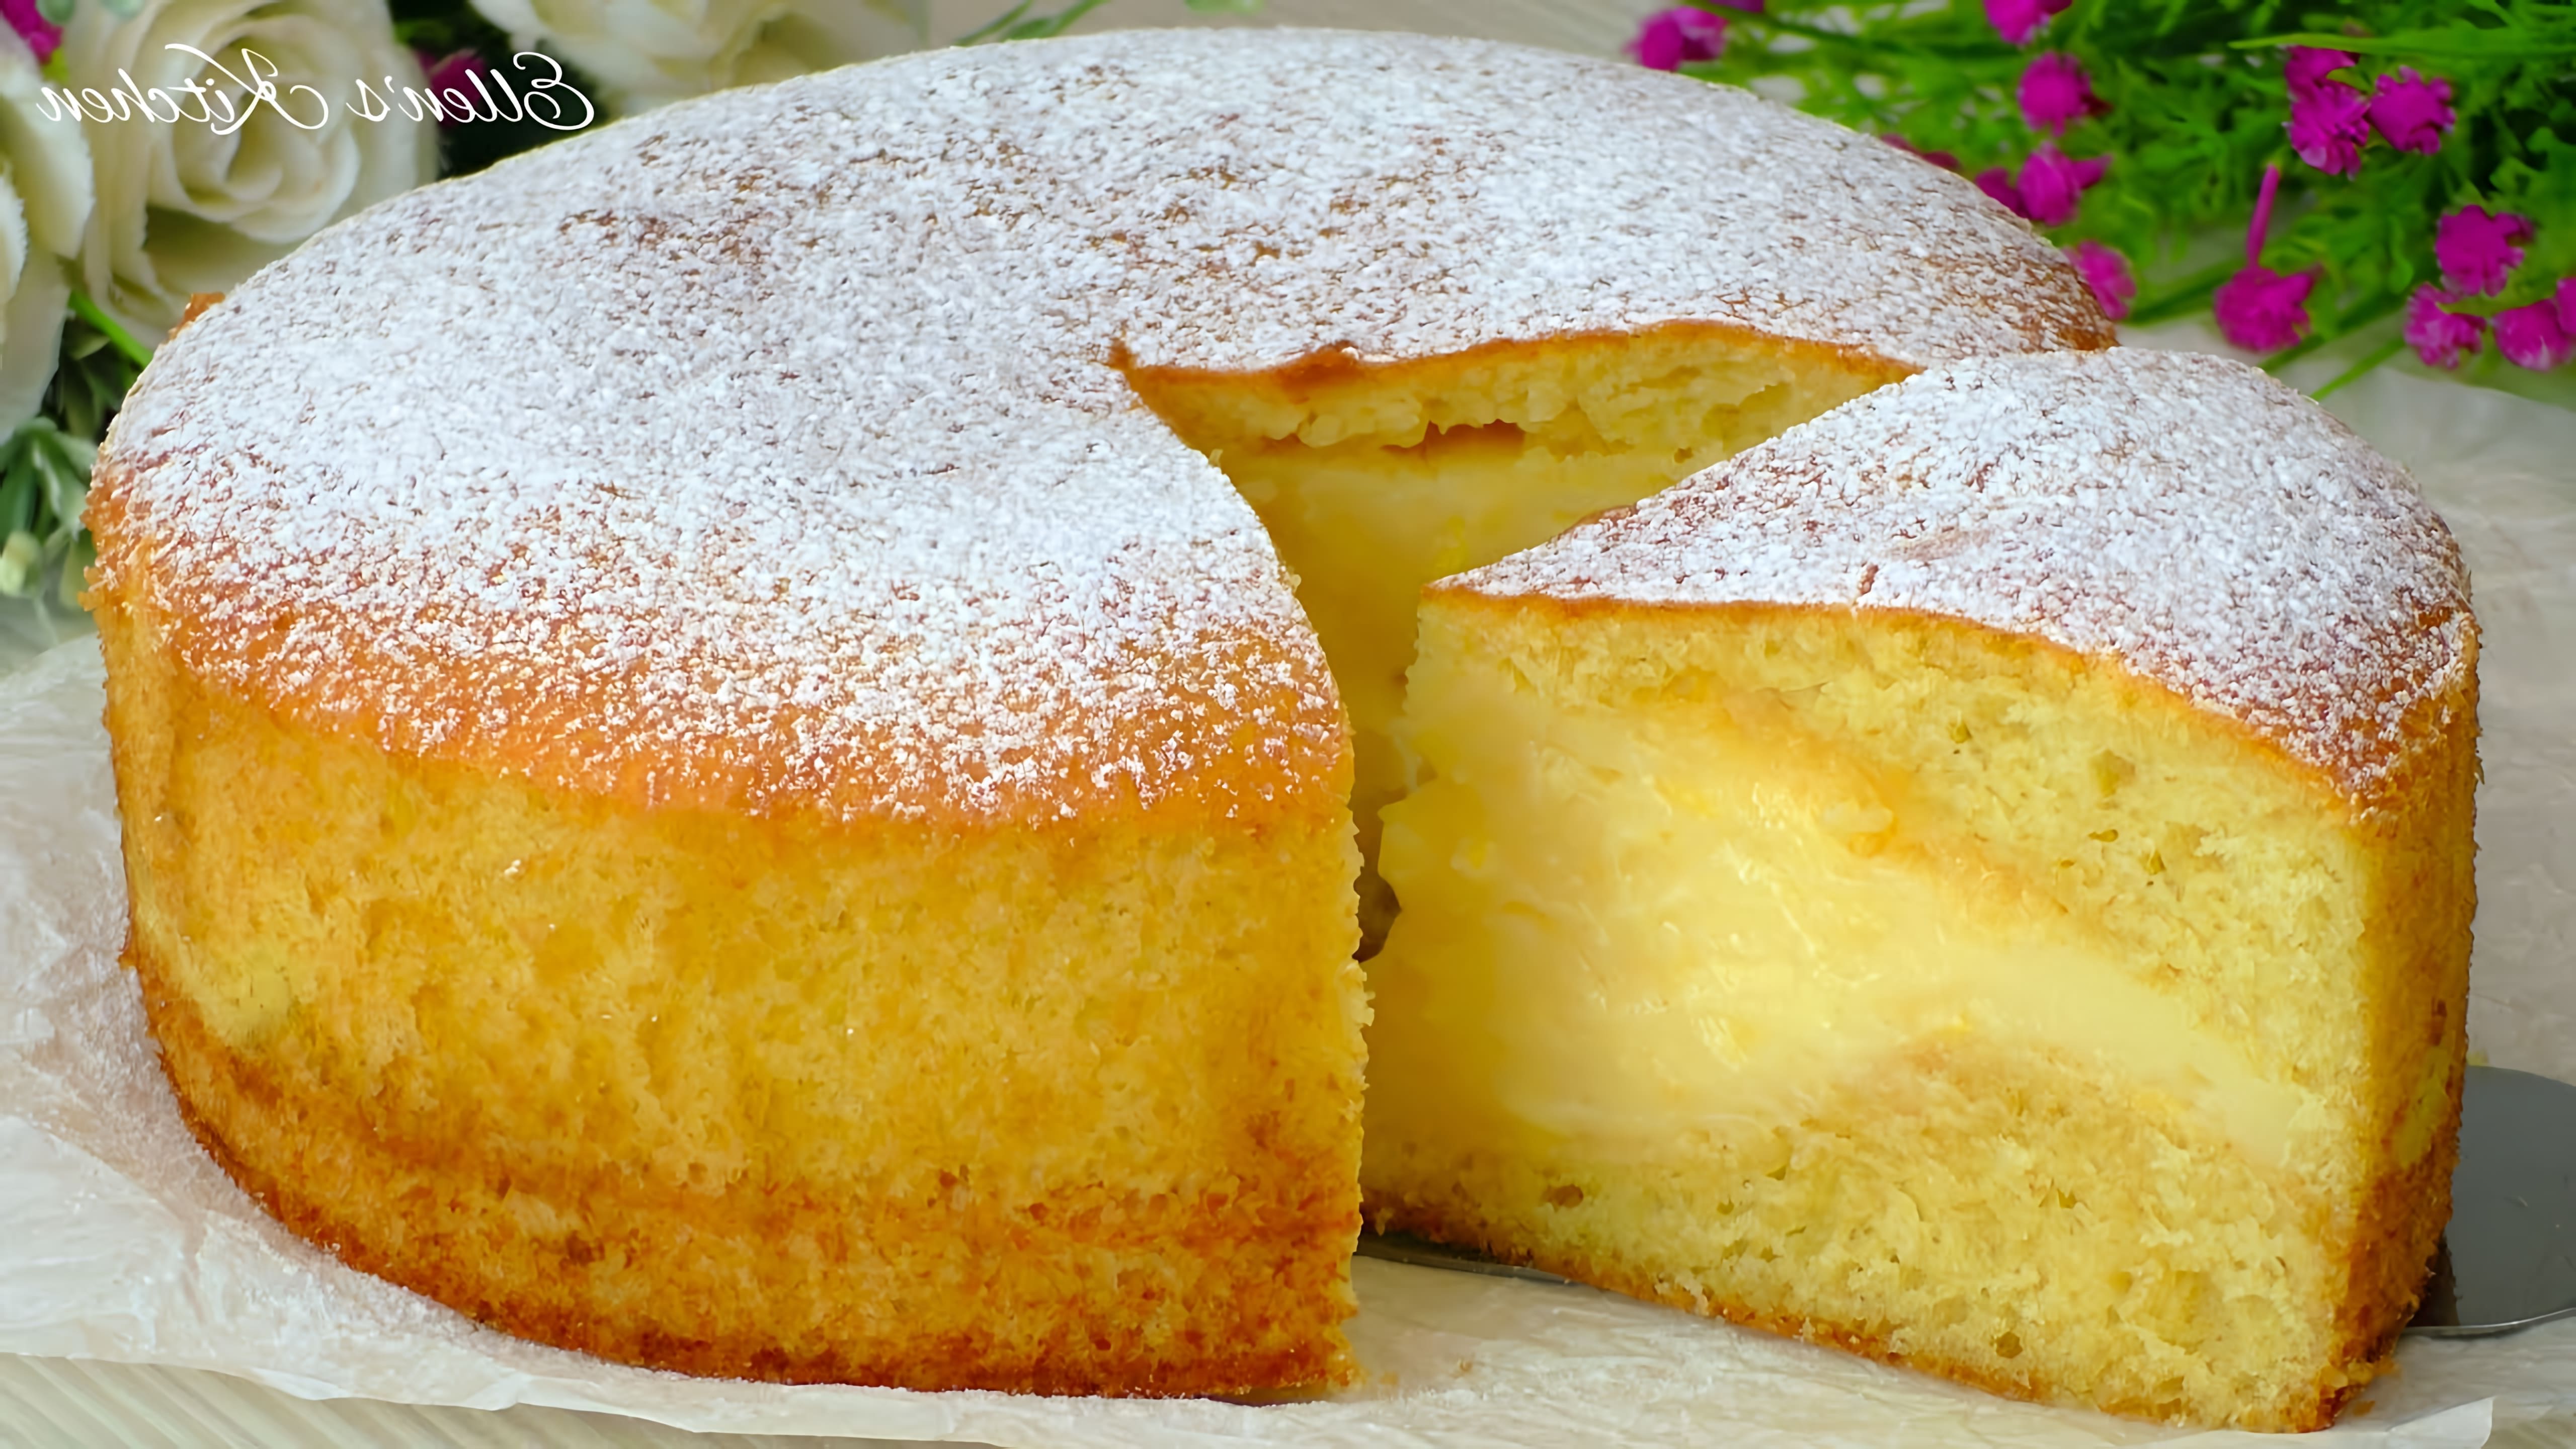 В этом видео демонстрируется рецепт приготовления лимонного торта